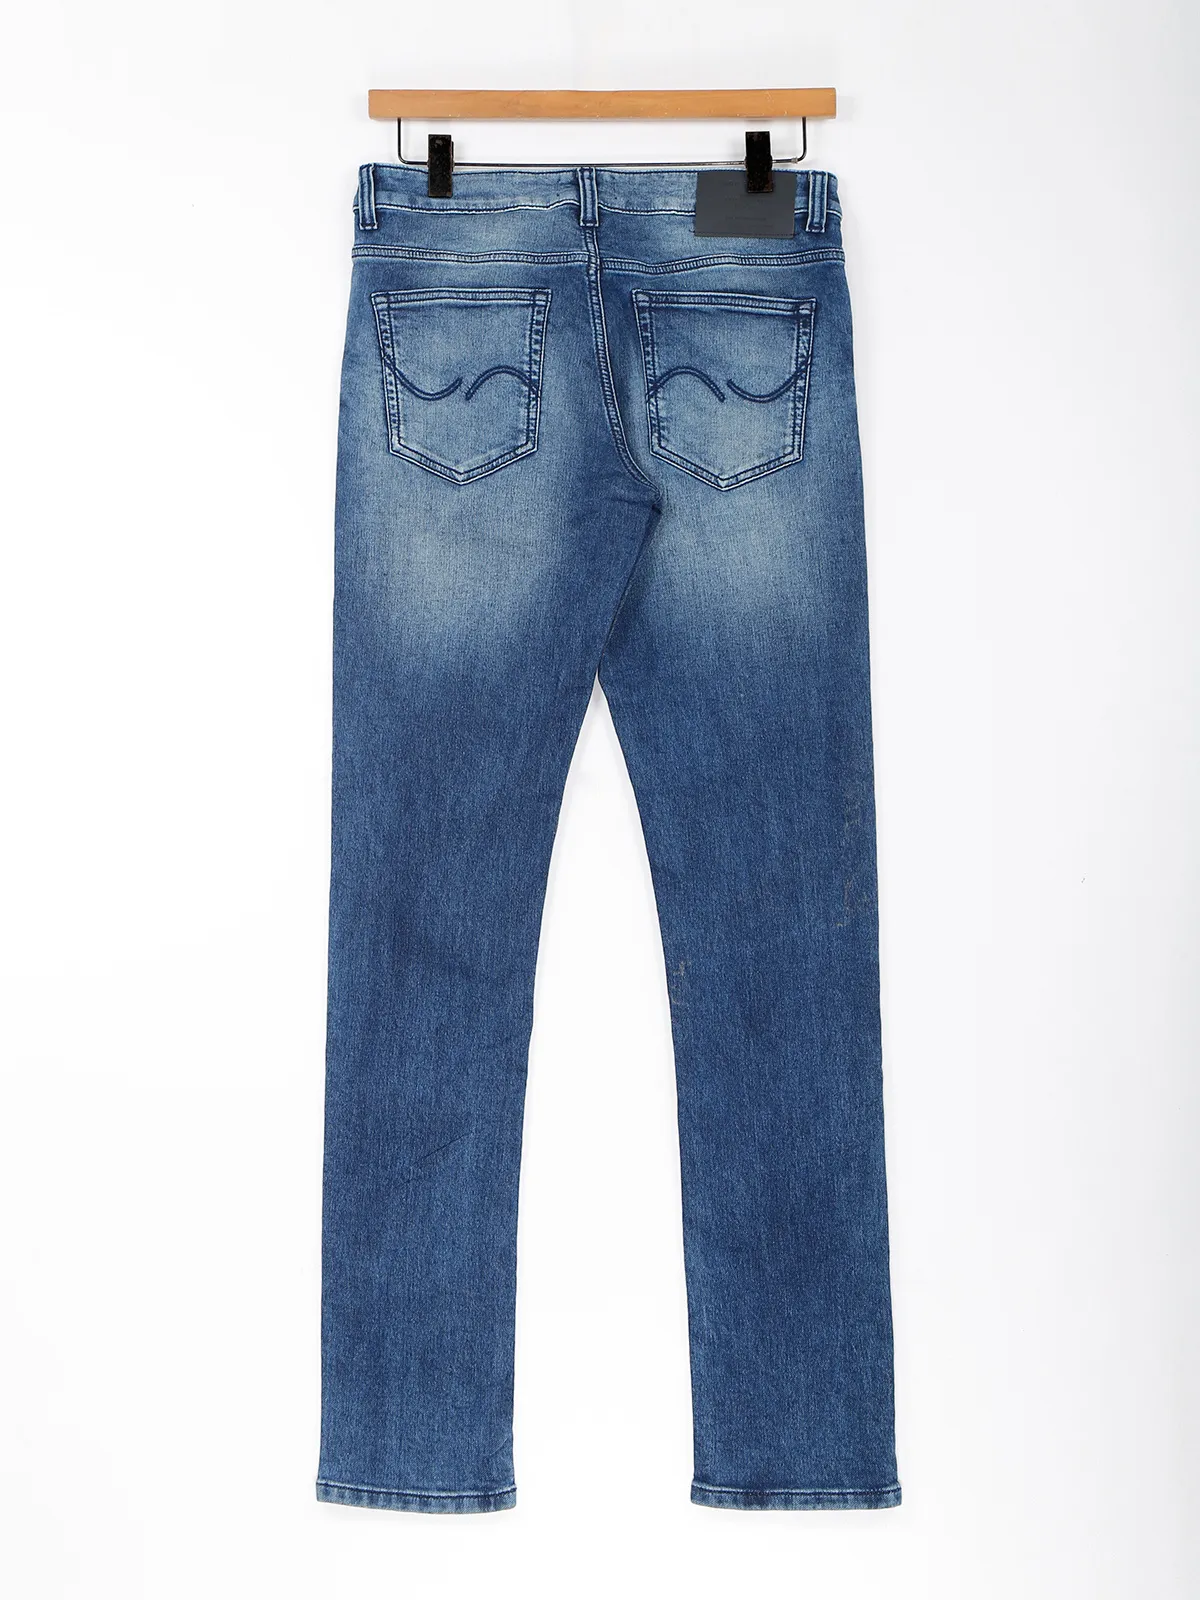 Jack&Jones blue washed jeans